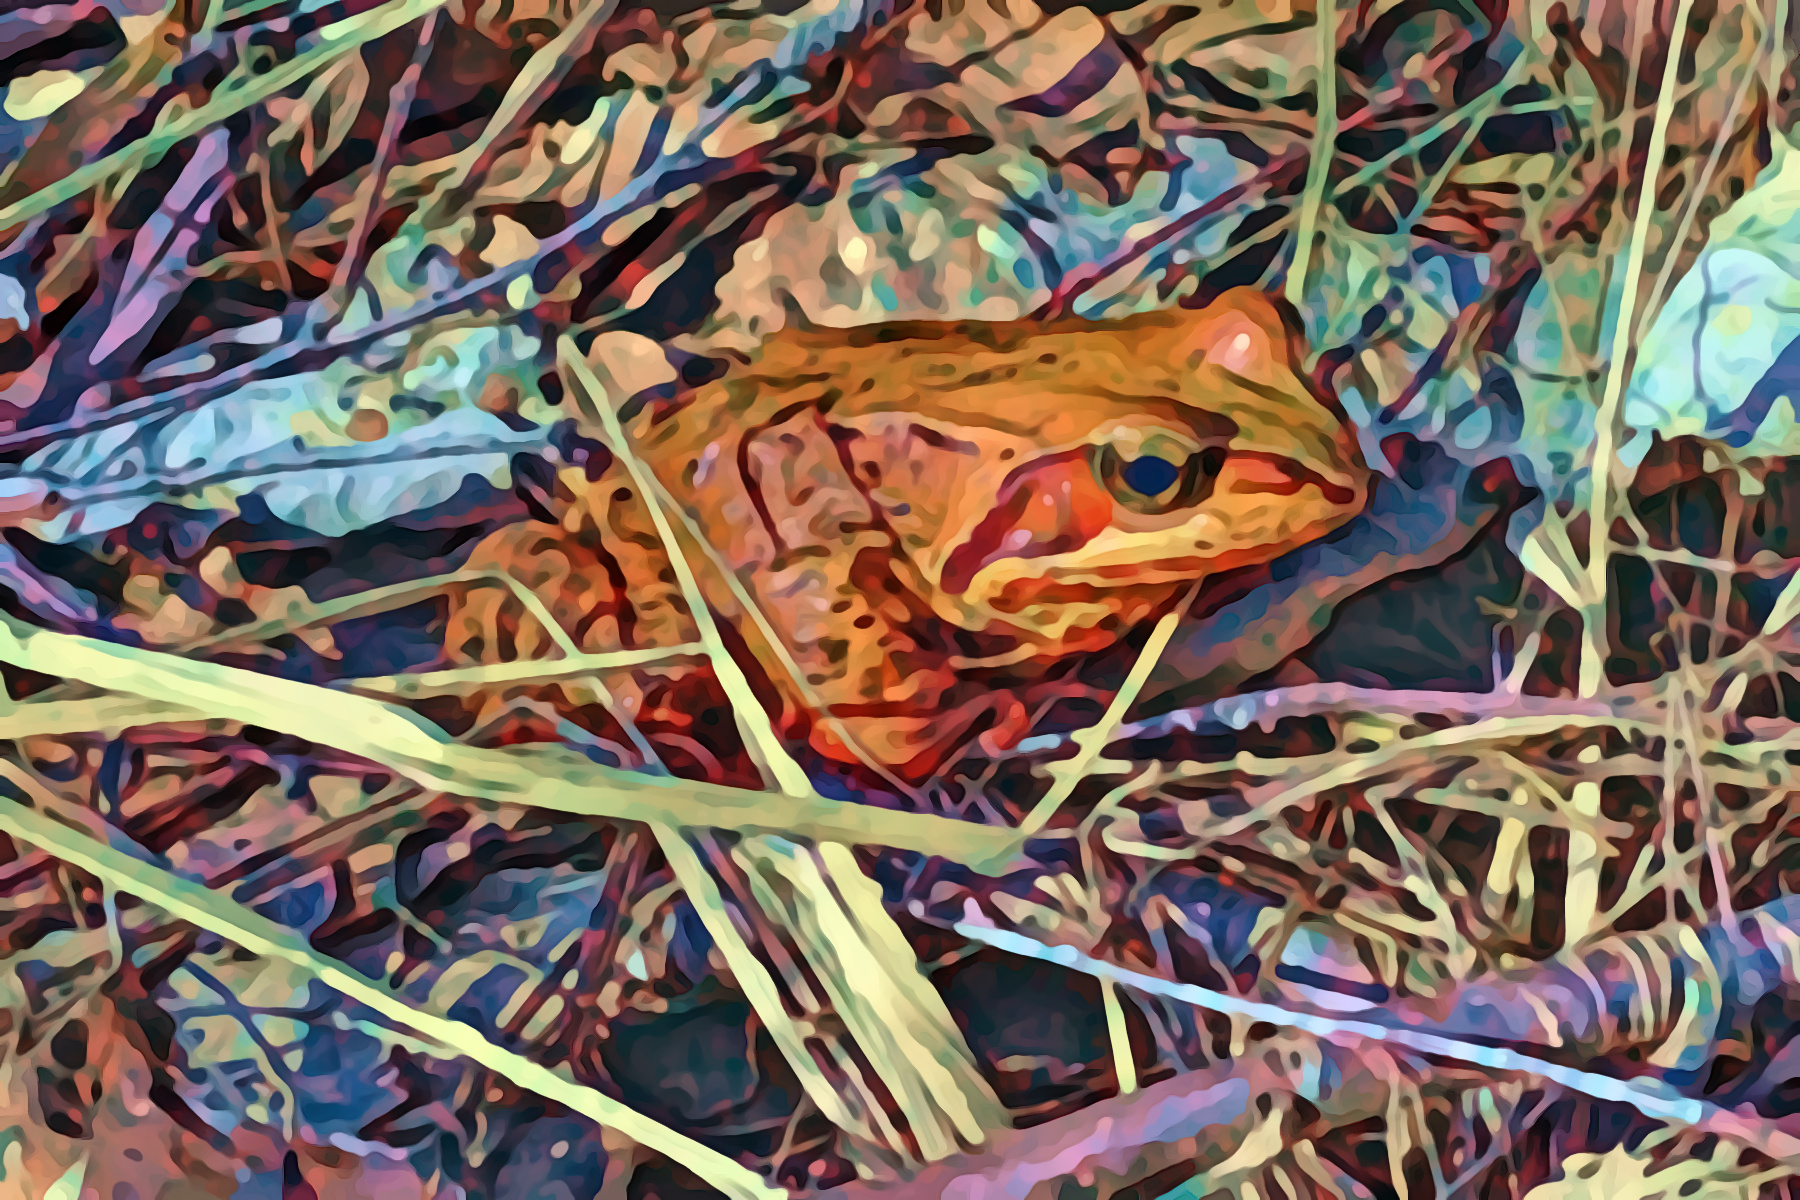 Frog2-PhotoIllustration.jpg